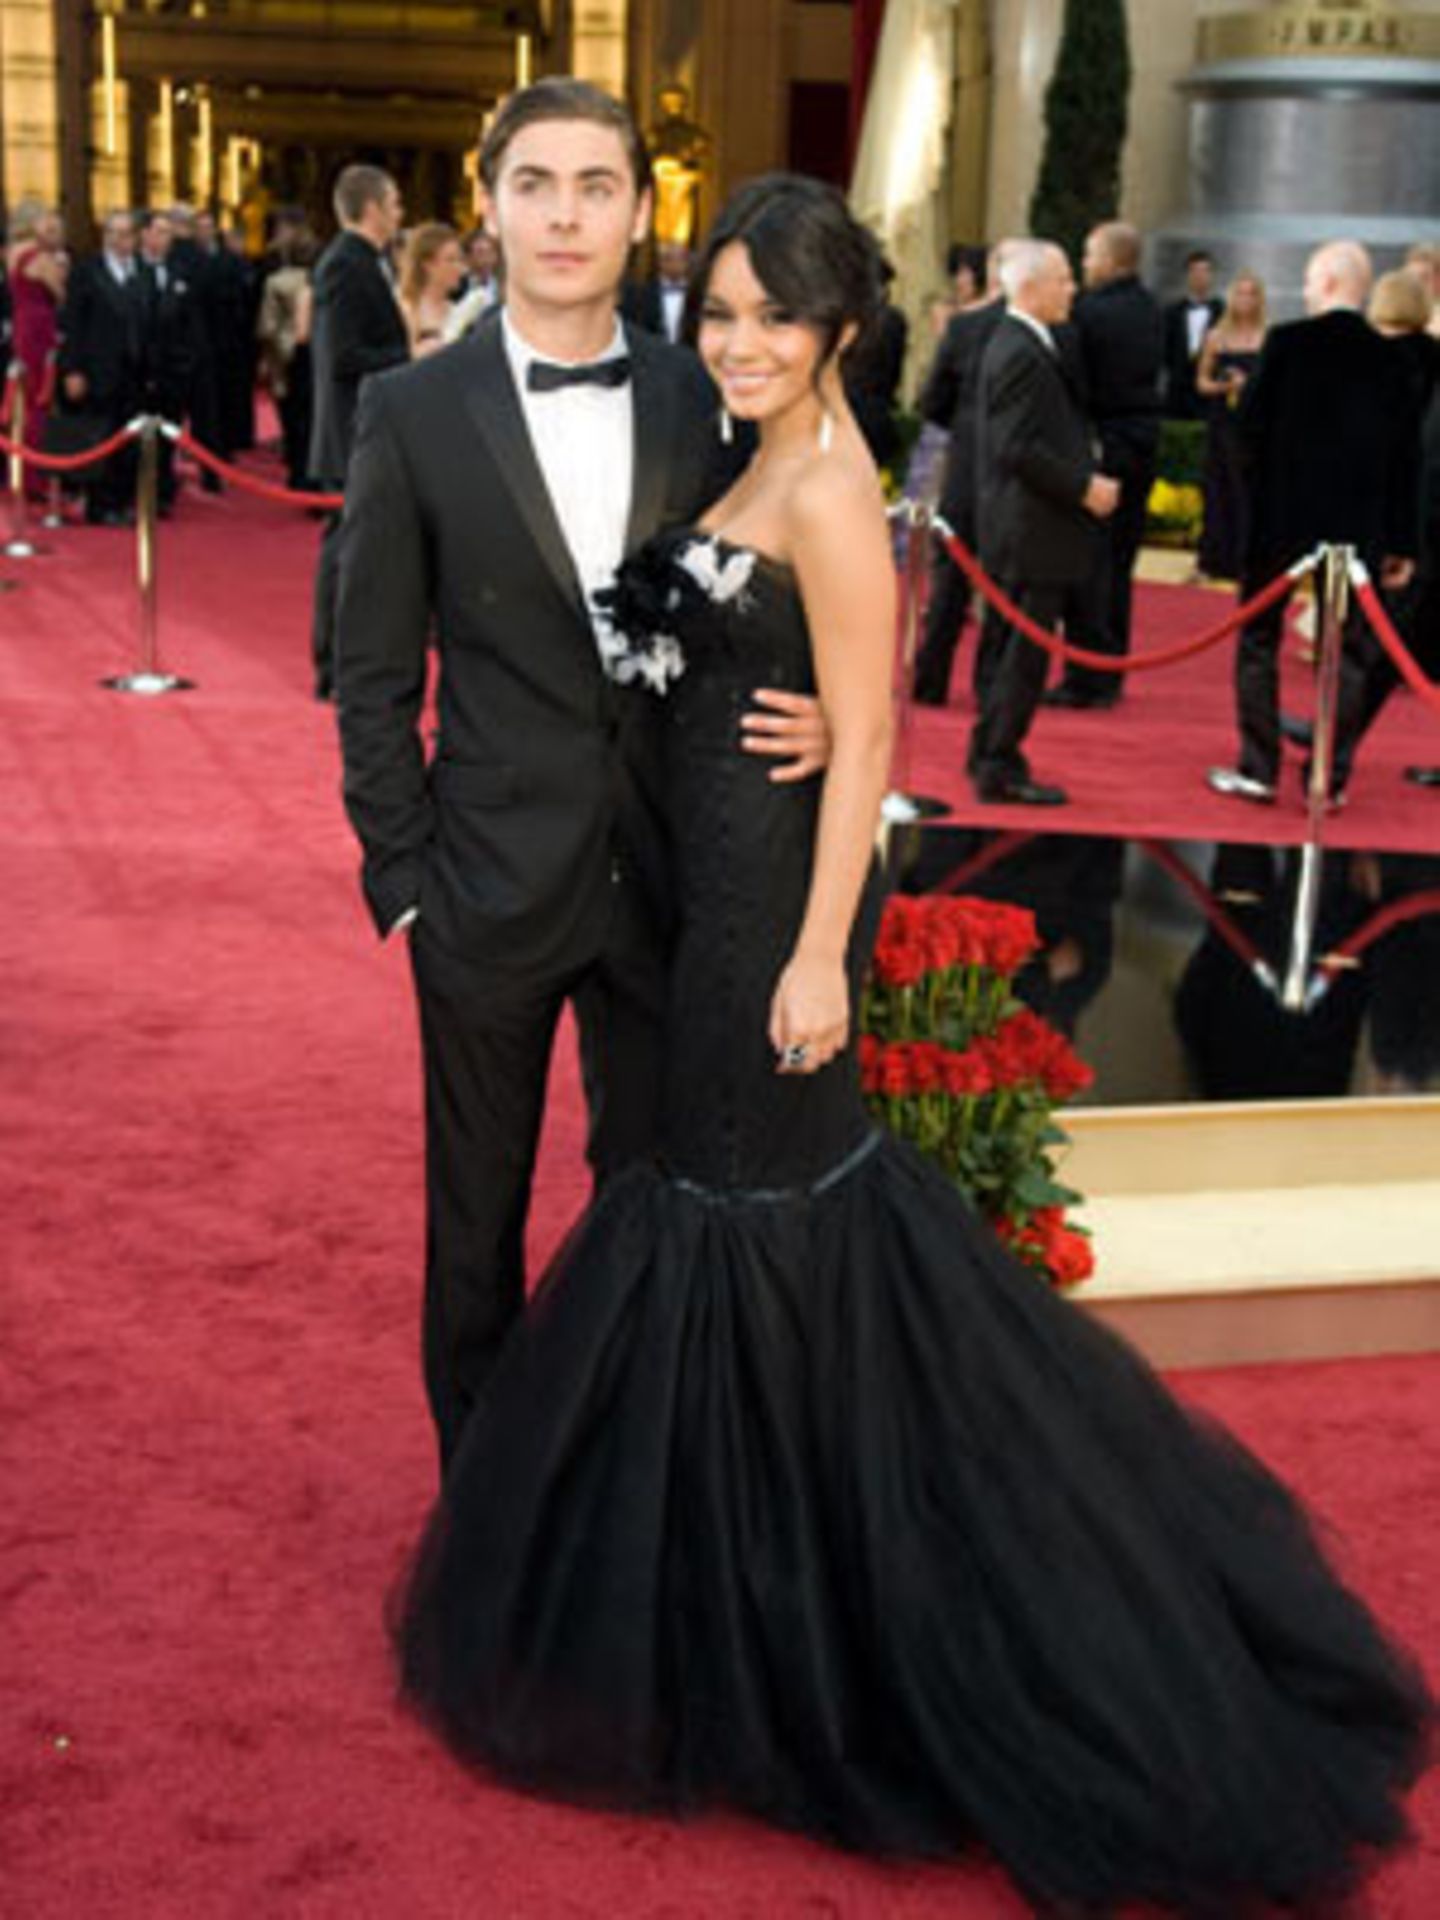 81. Oscar-Verleihung: Zac Efron und Vanessa Hudgens aus "High School Musical"